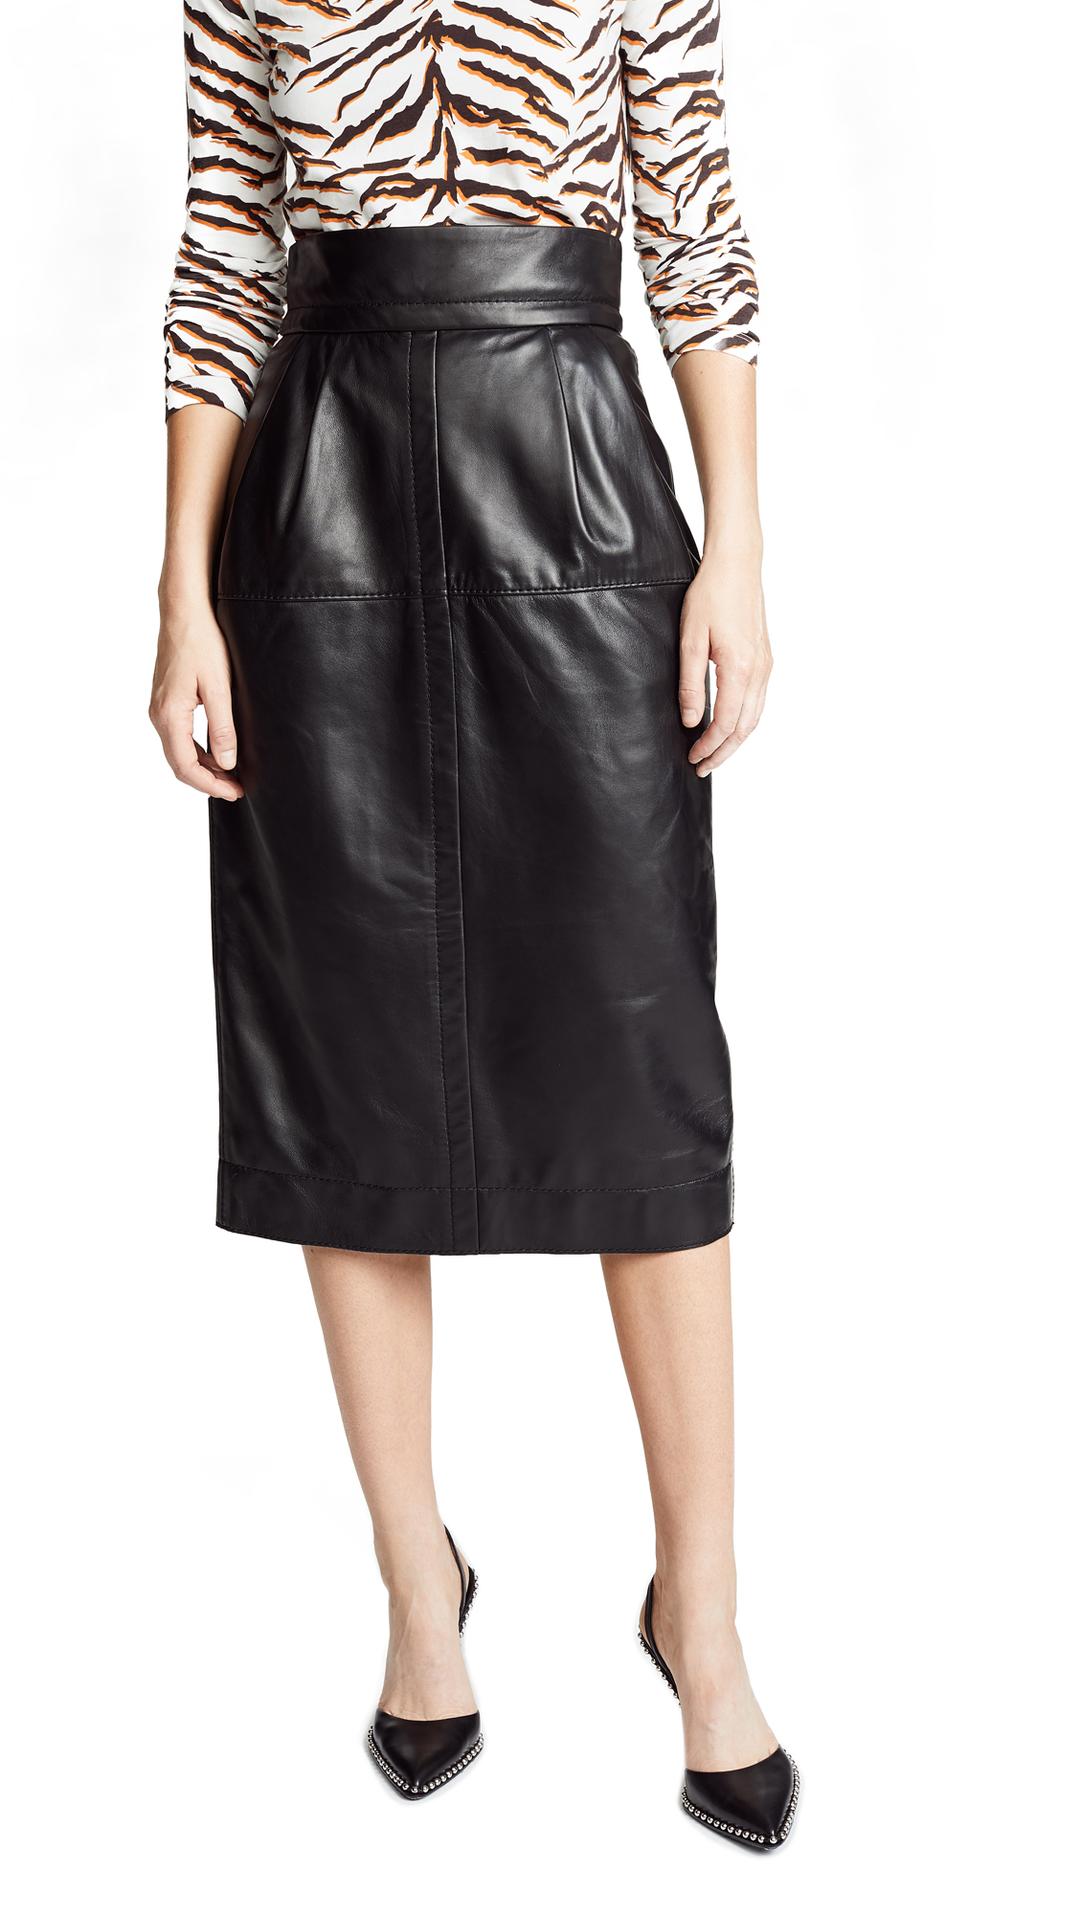 tailored skirt Black vintage leather skirt leather midi skirt